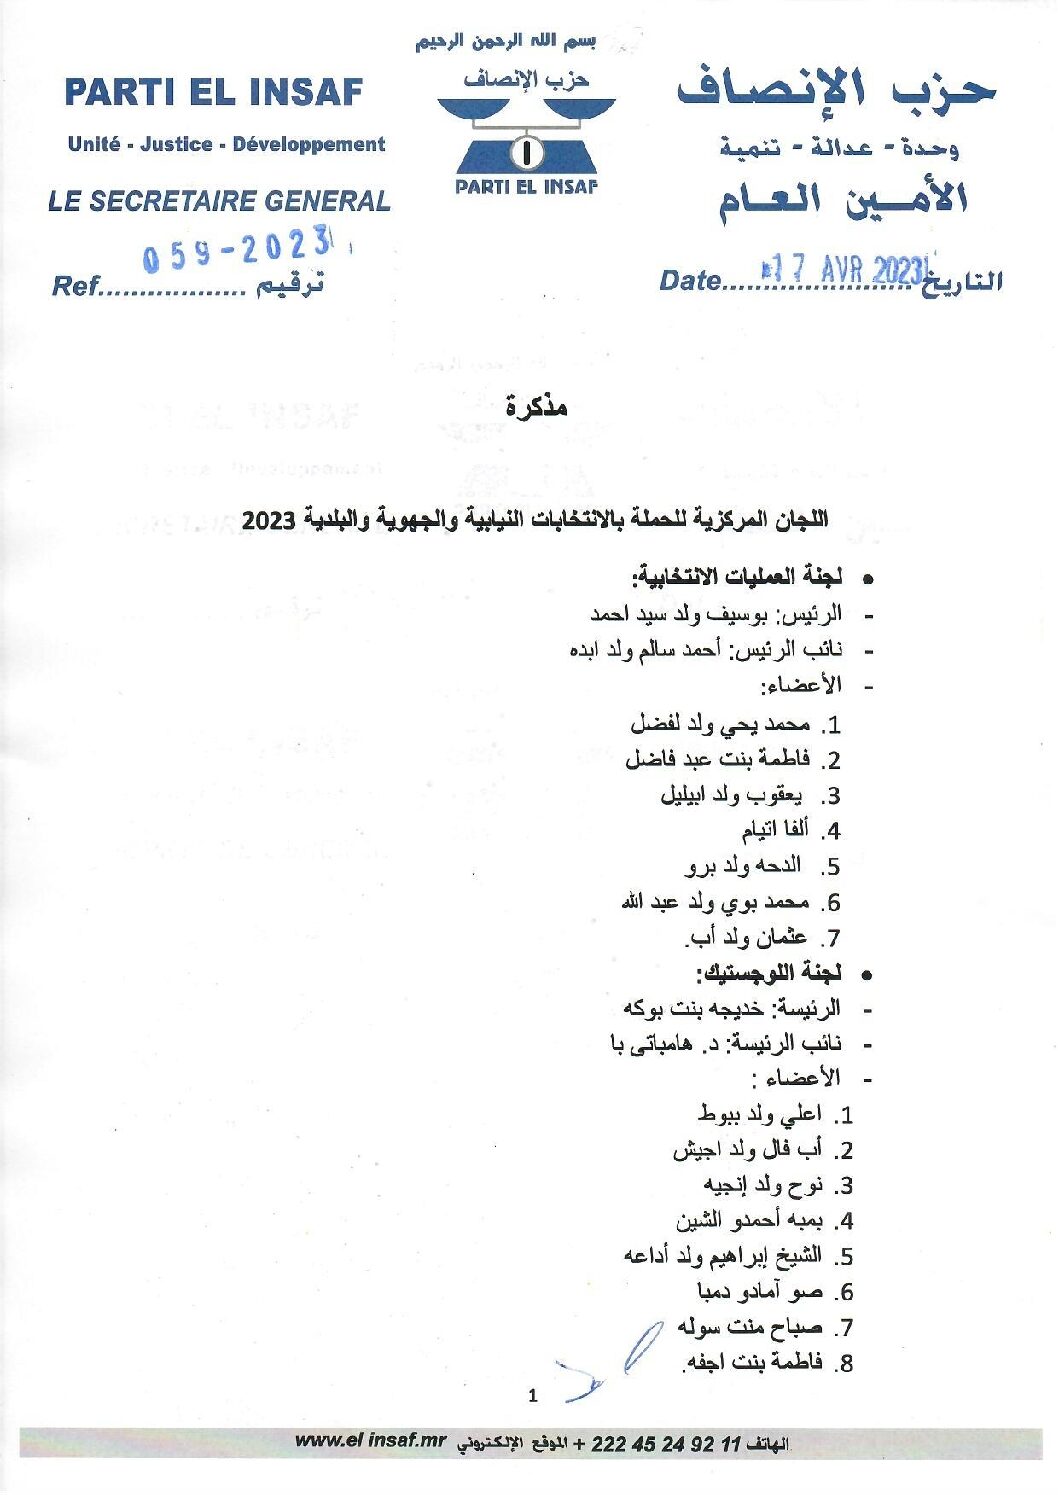 صورة اللجان المركزية للحملة بالانتخابات النيابية والجهوية والبلدية 2023